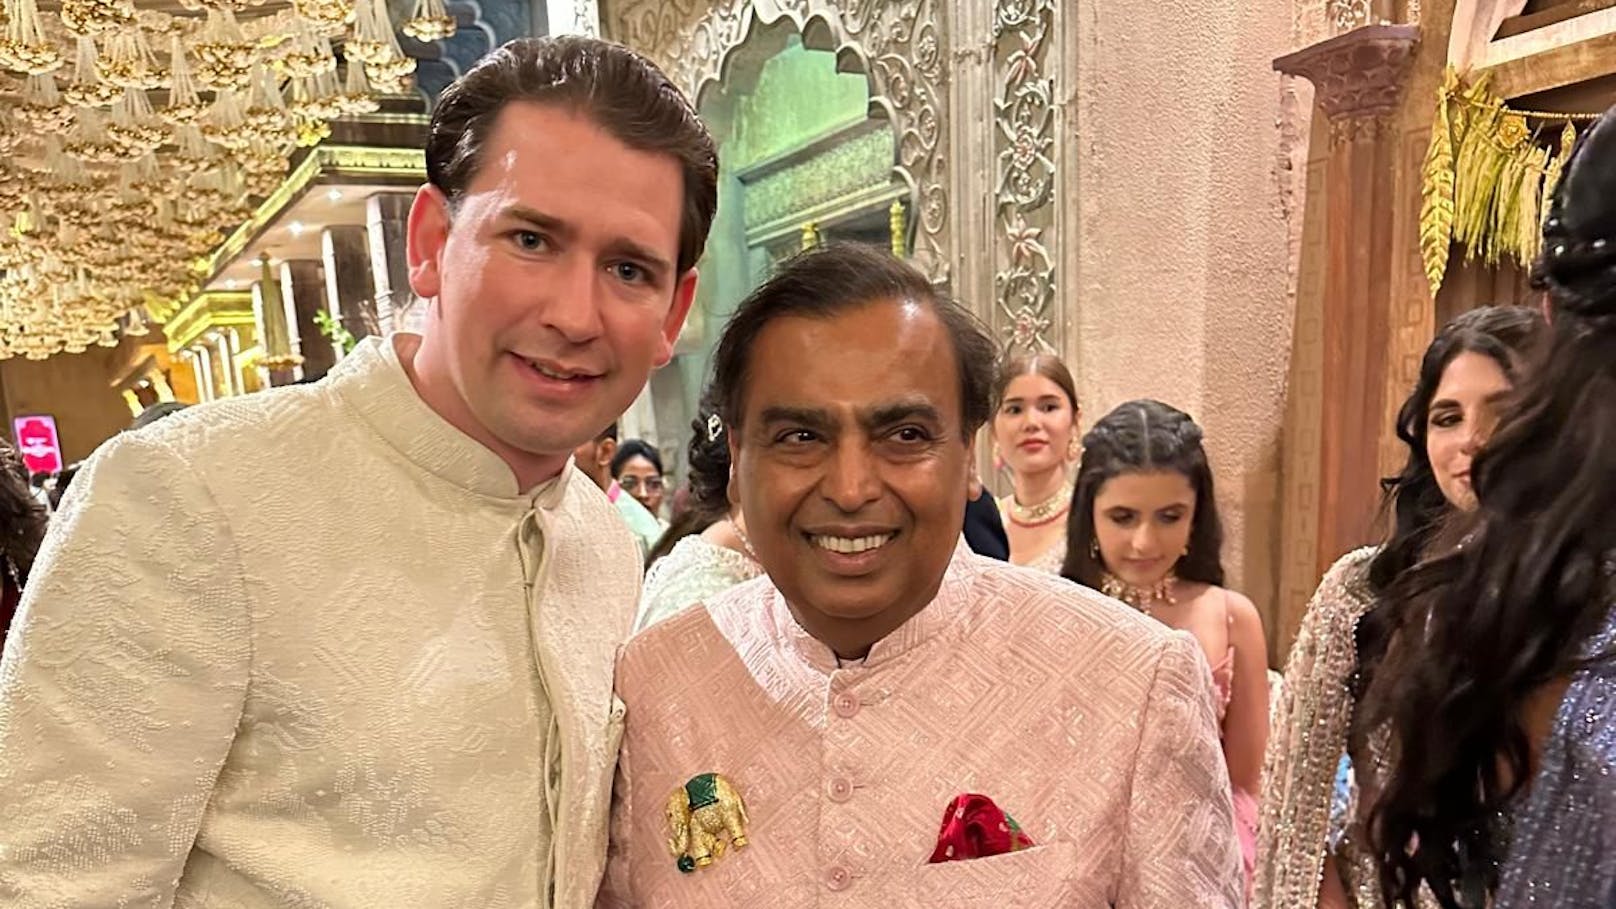 Ex-Kanzler Kurz in indischer Tracht bei Mega-Hochzeit